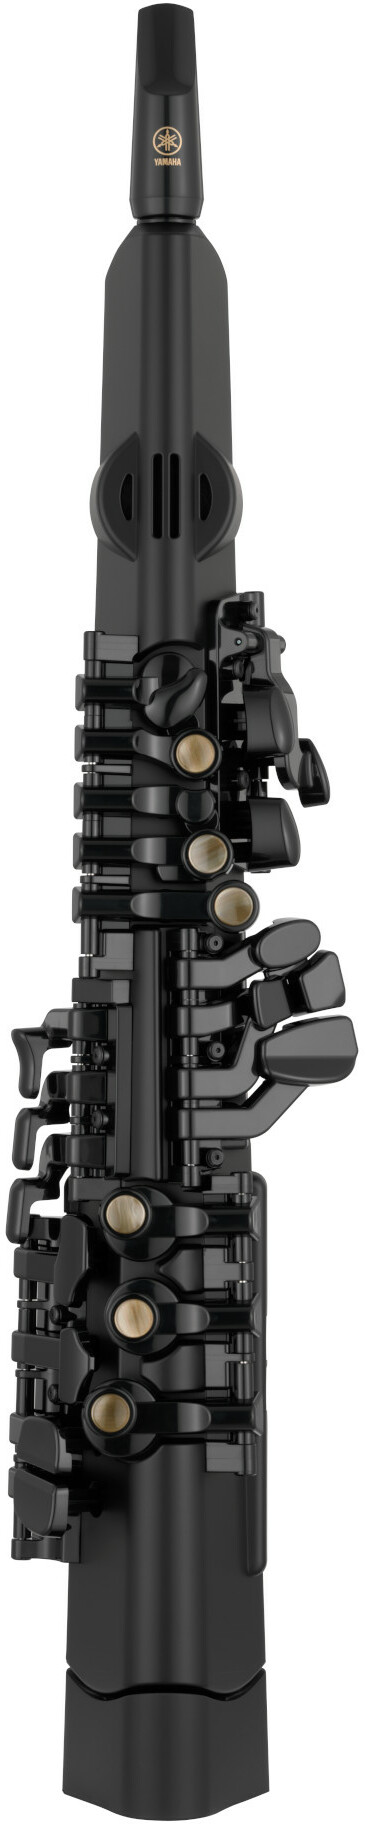 Yamaha Yds-120 Digital Saxophone - Instrumento de viento electrónico - Main picture